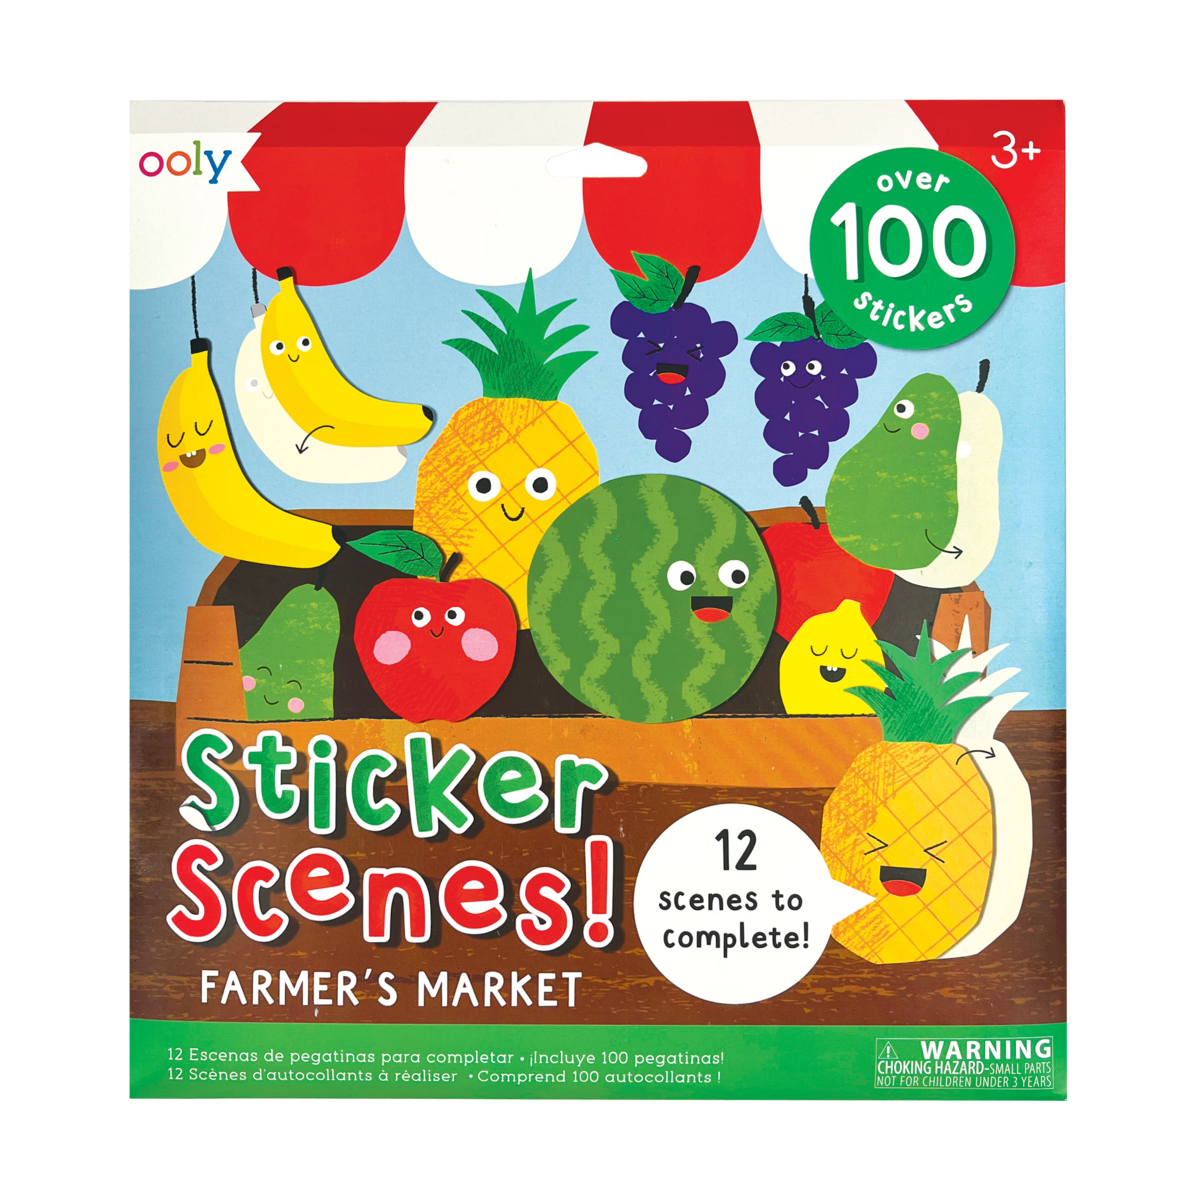 Farmer's Market Sticker Scenes! front of packaging